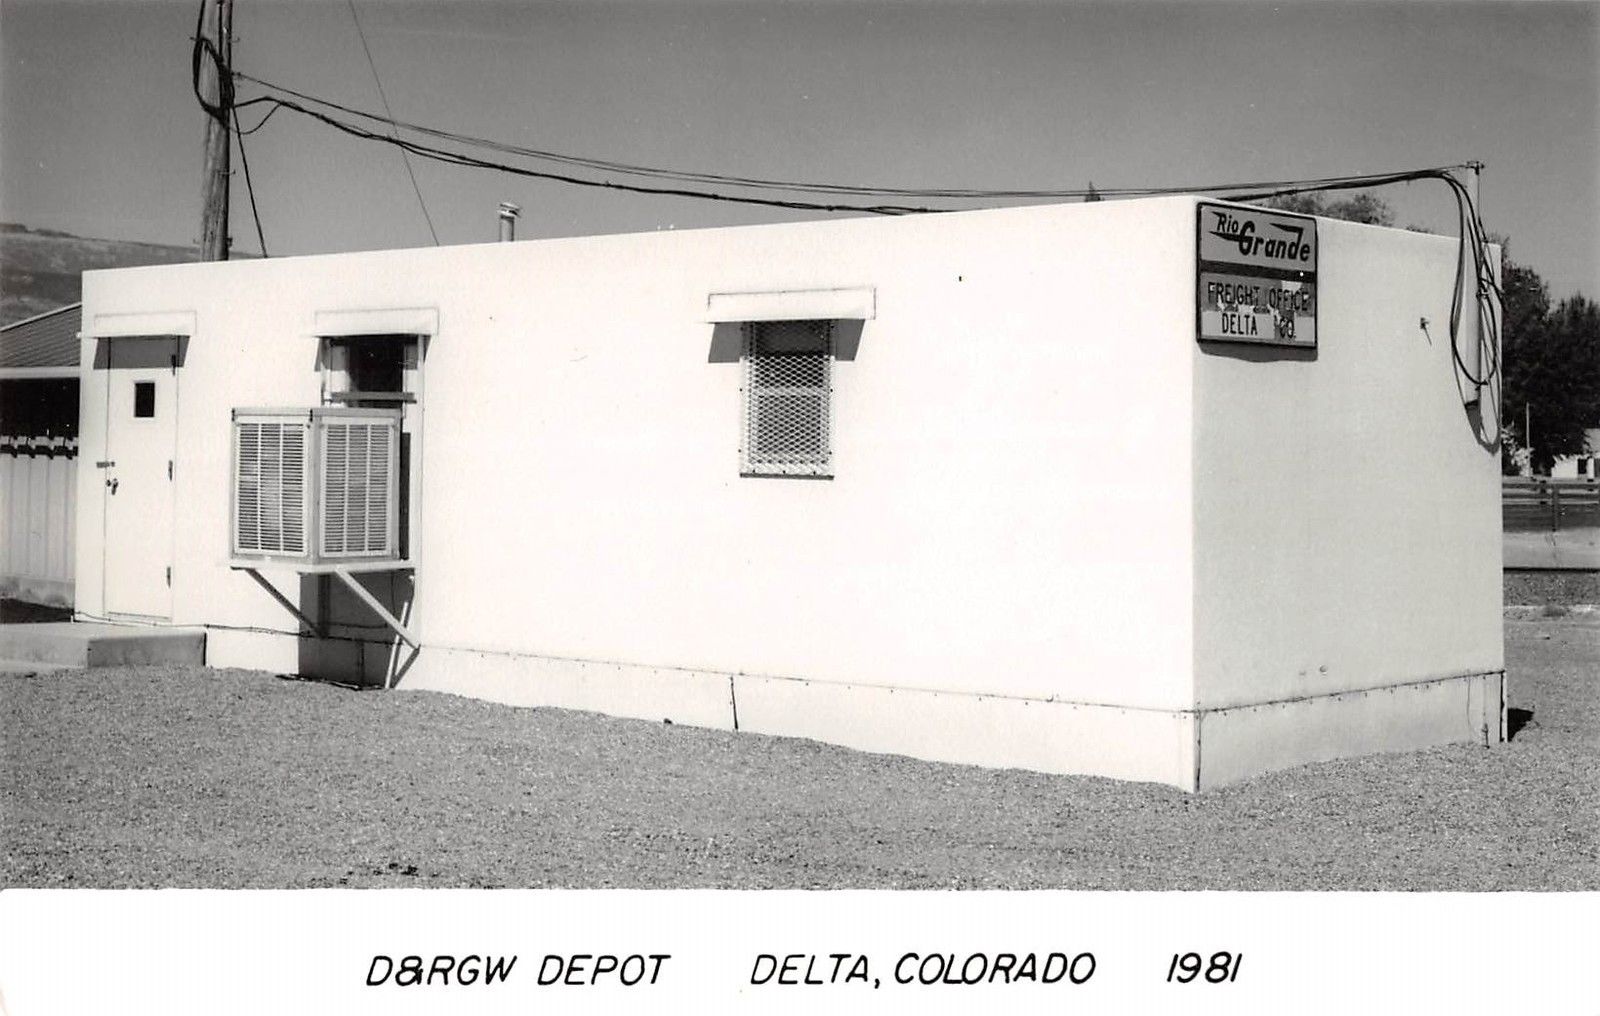 Delta Co D&amp;RGW freight depot 1981.jpg